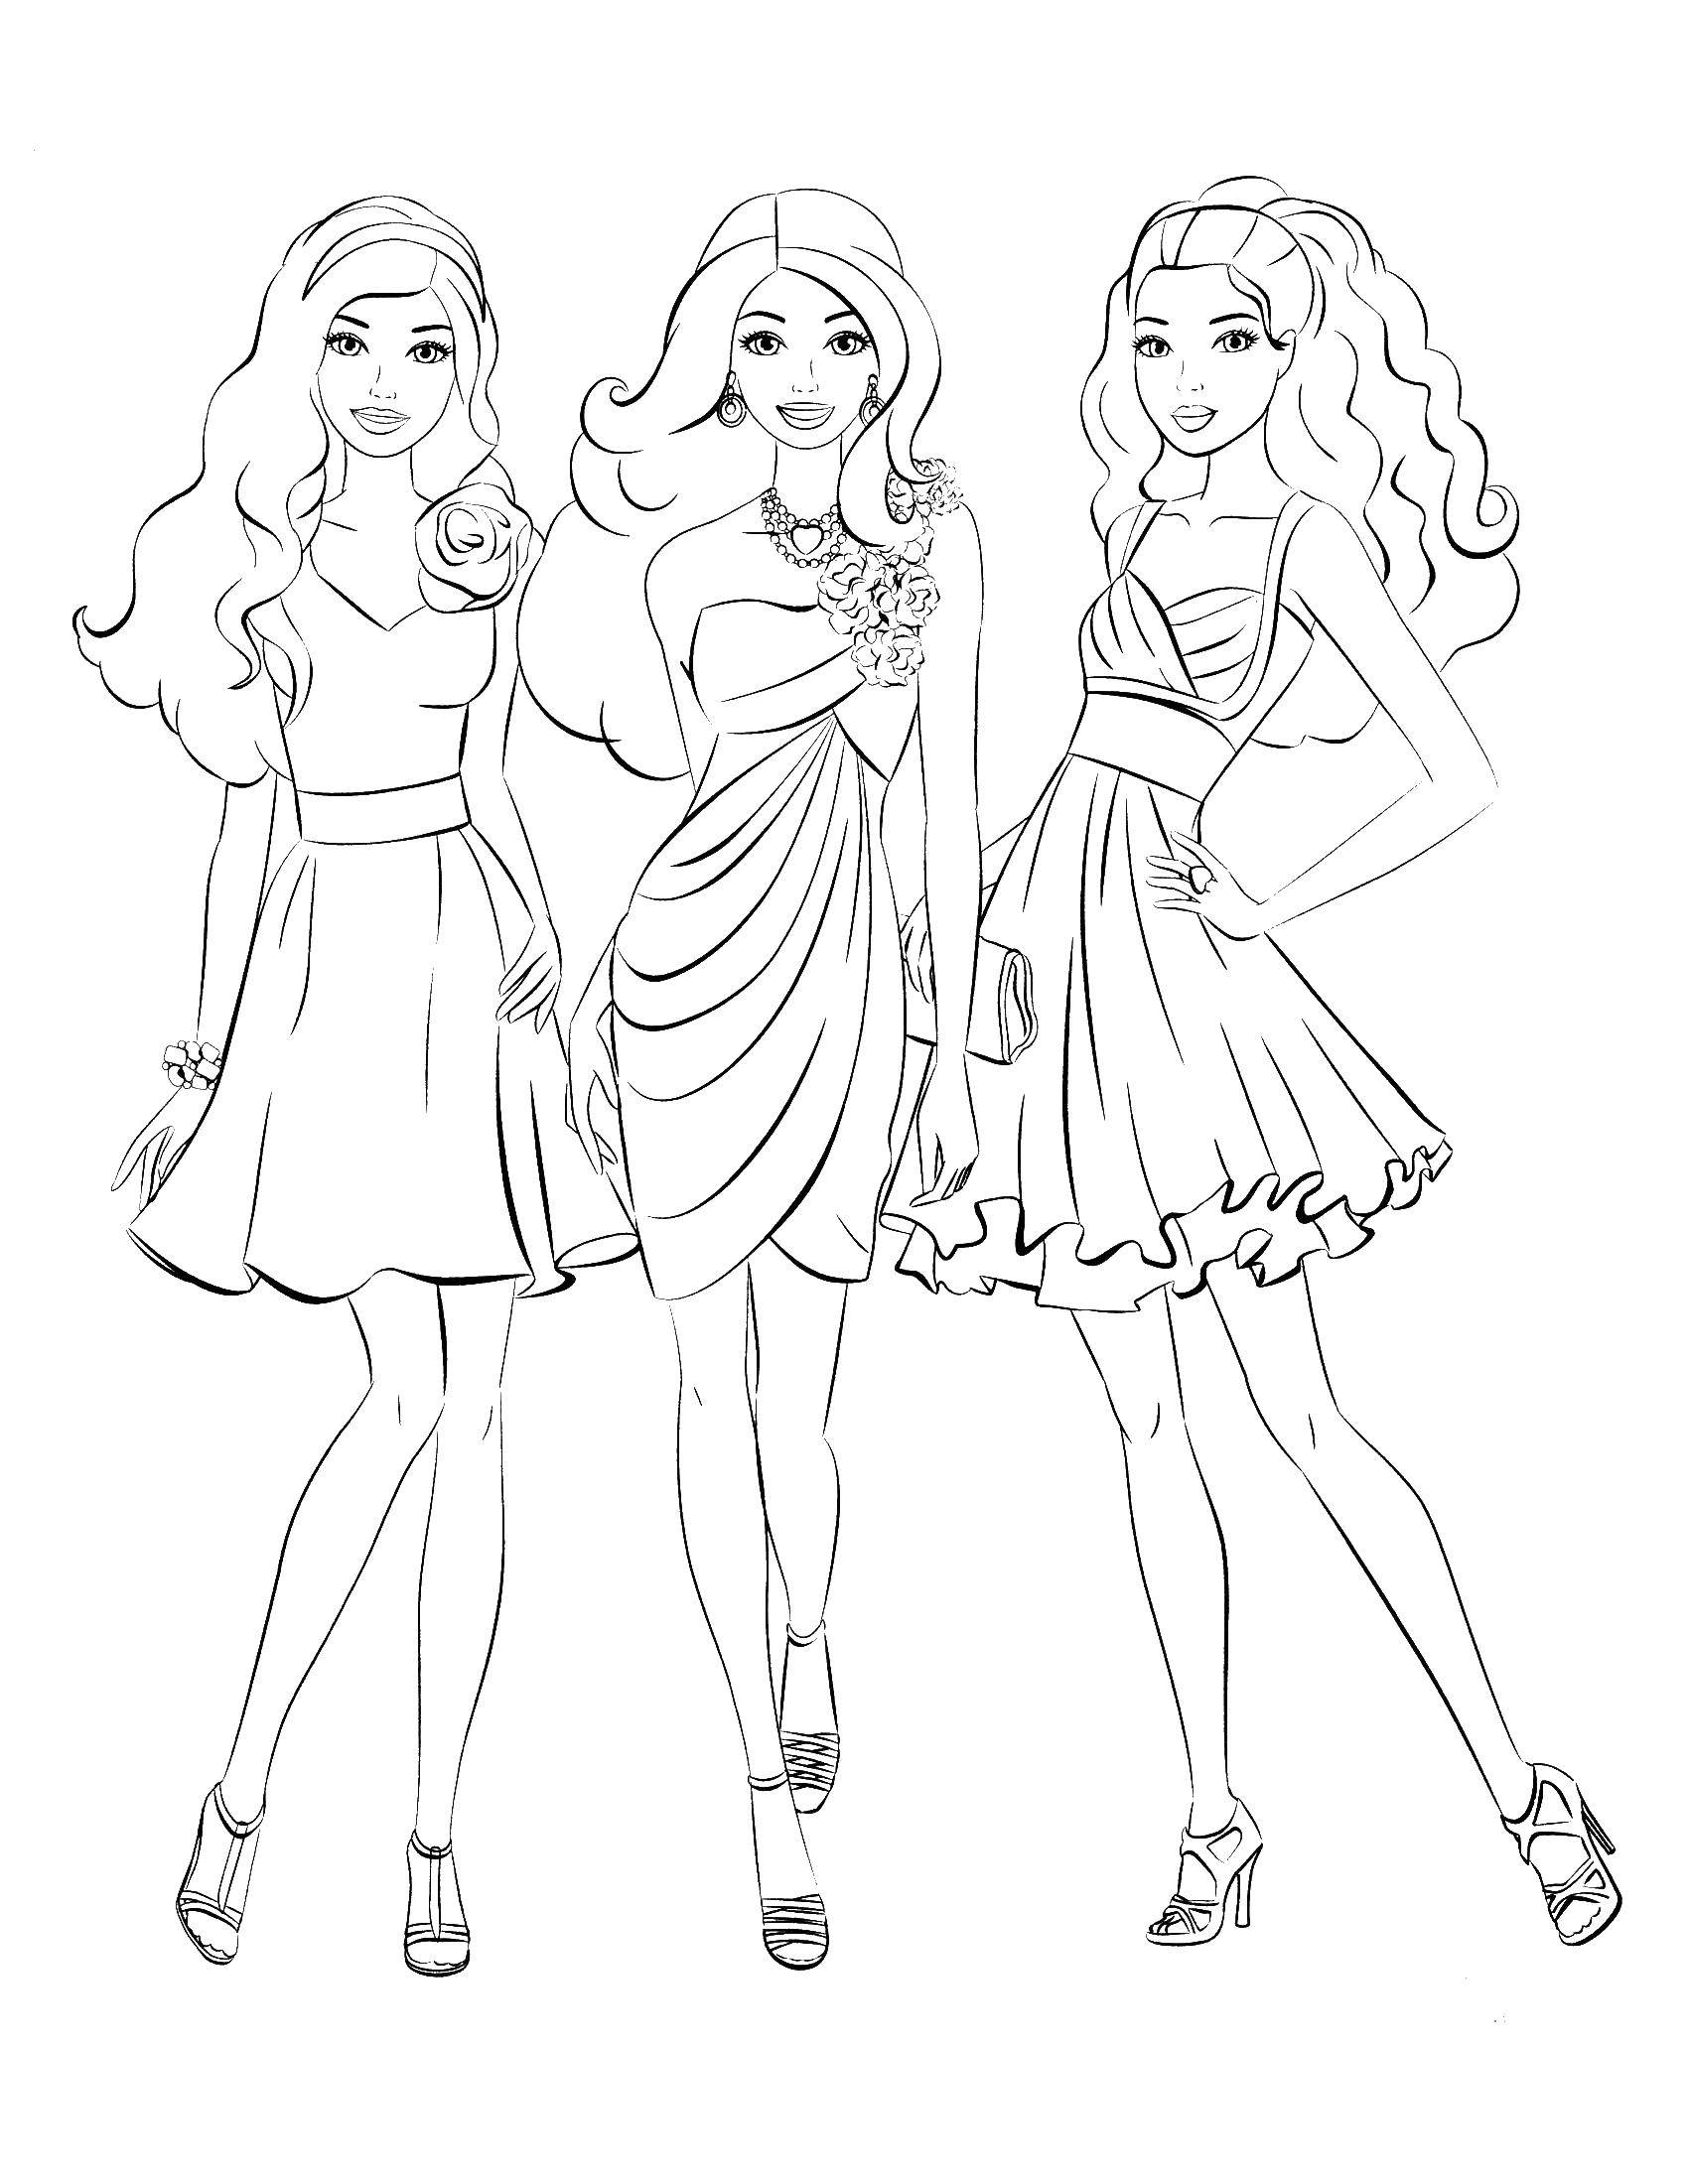 Название: Раскраска Три барби в красивых платьях. Категория: Барби. Теги: барби, девочки, куклы.